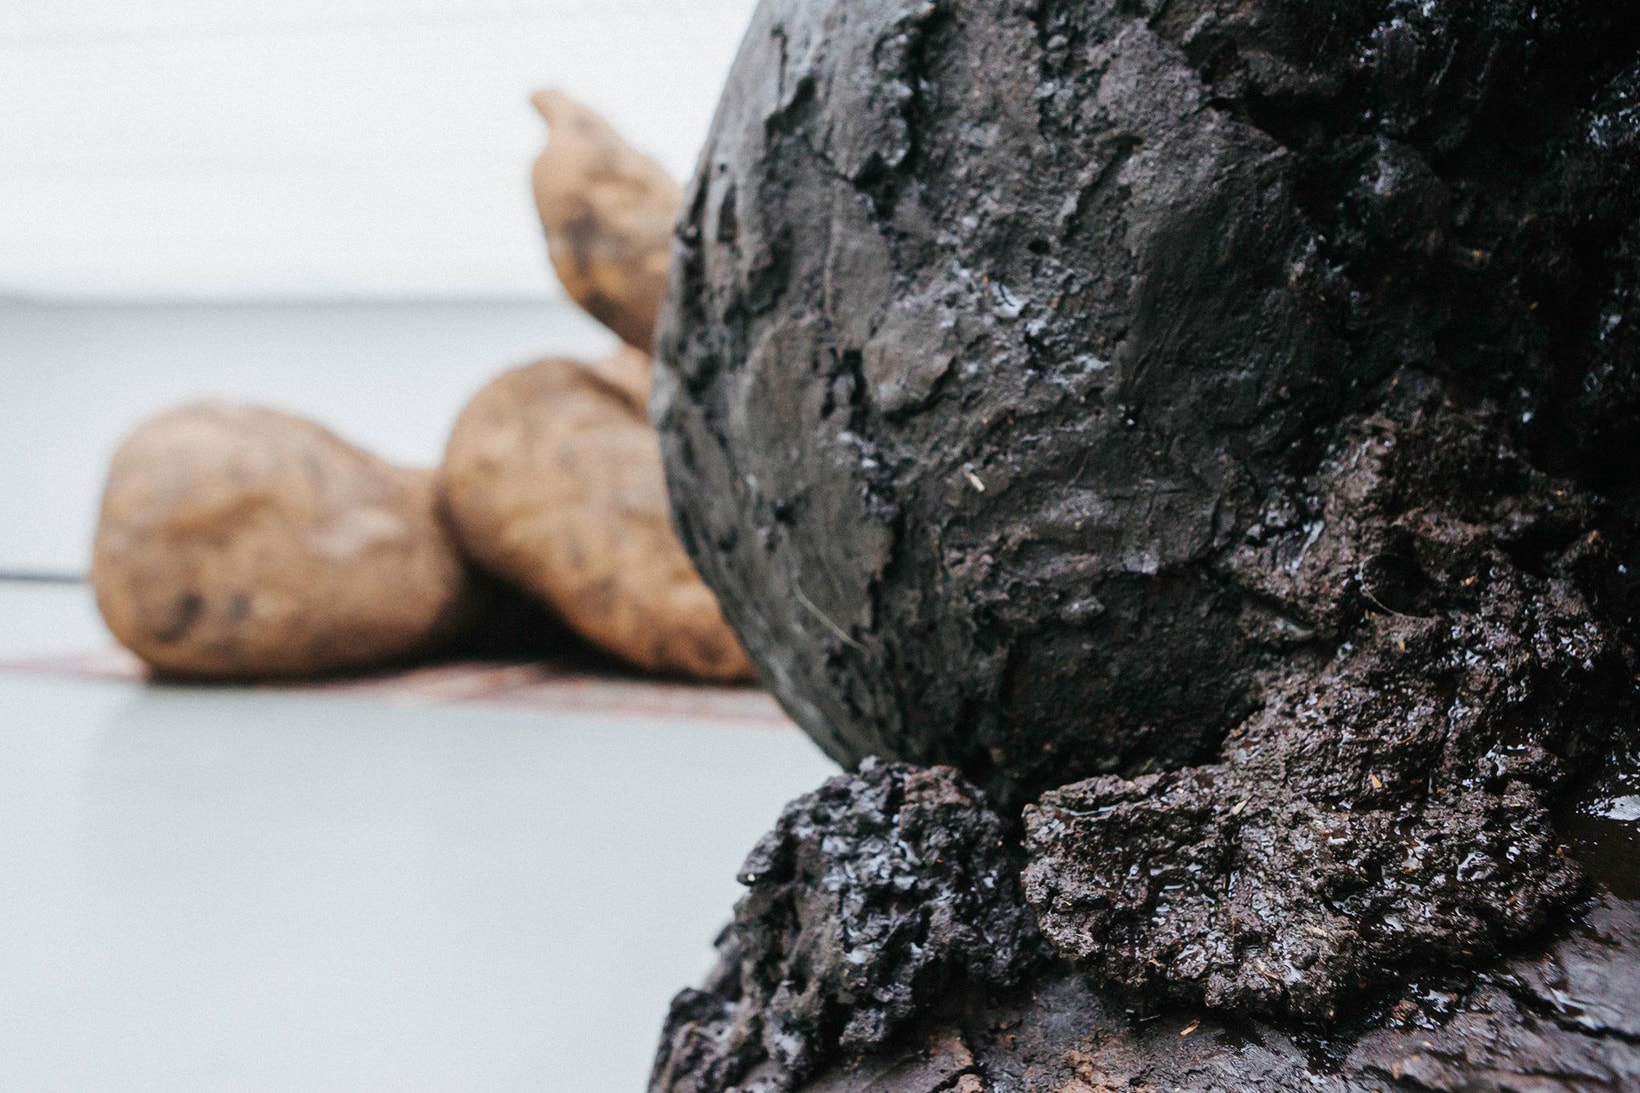 예술 그룹 젤라틴이 만든 세상에서 가장 커다란 배설물 작품 2018 gelatin excrement sculptures poop museum